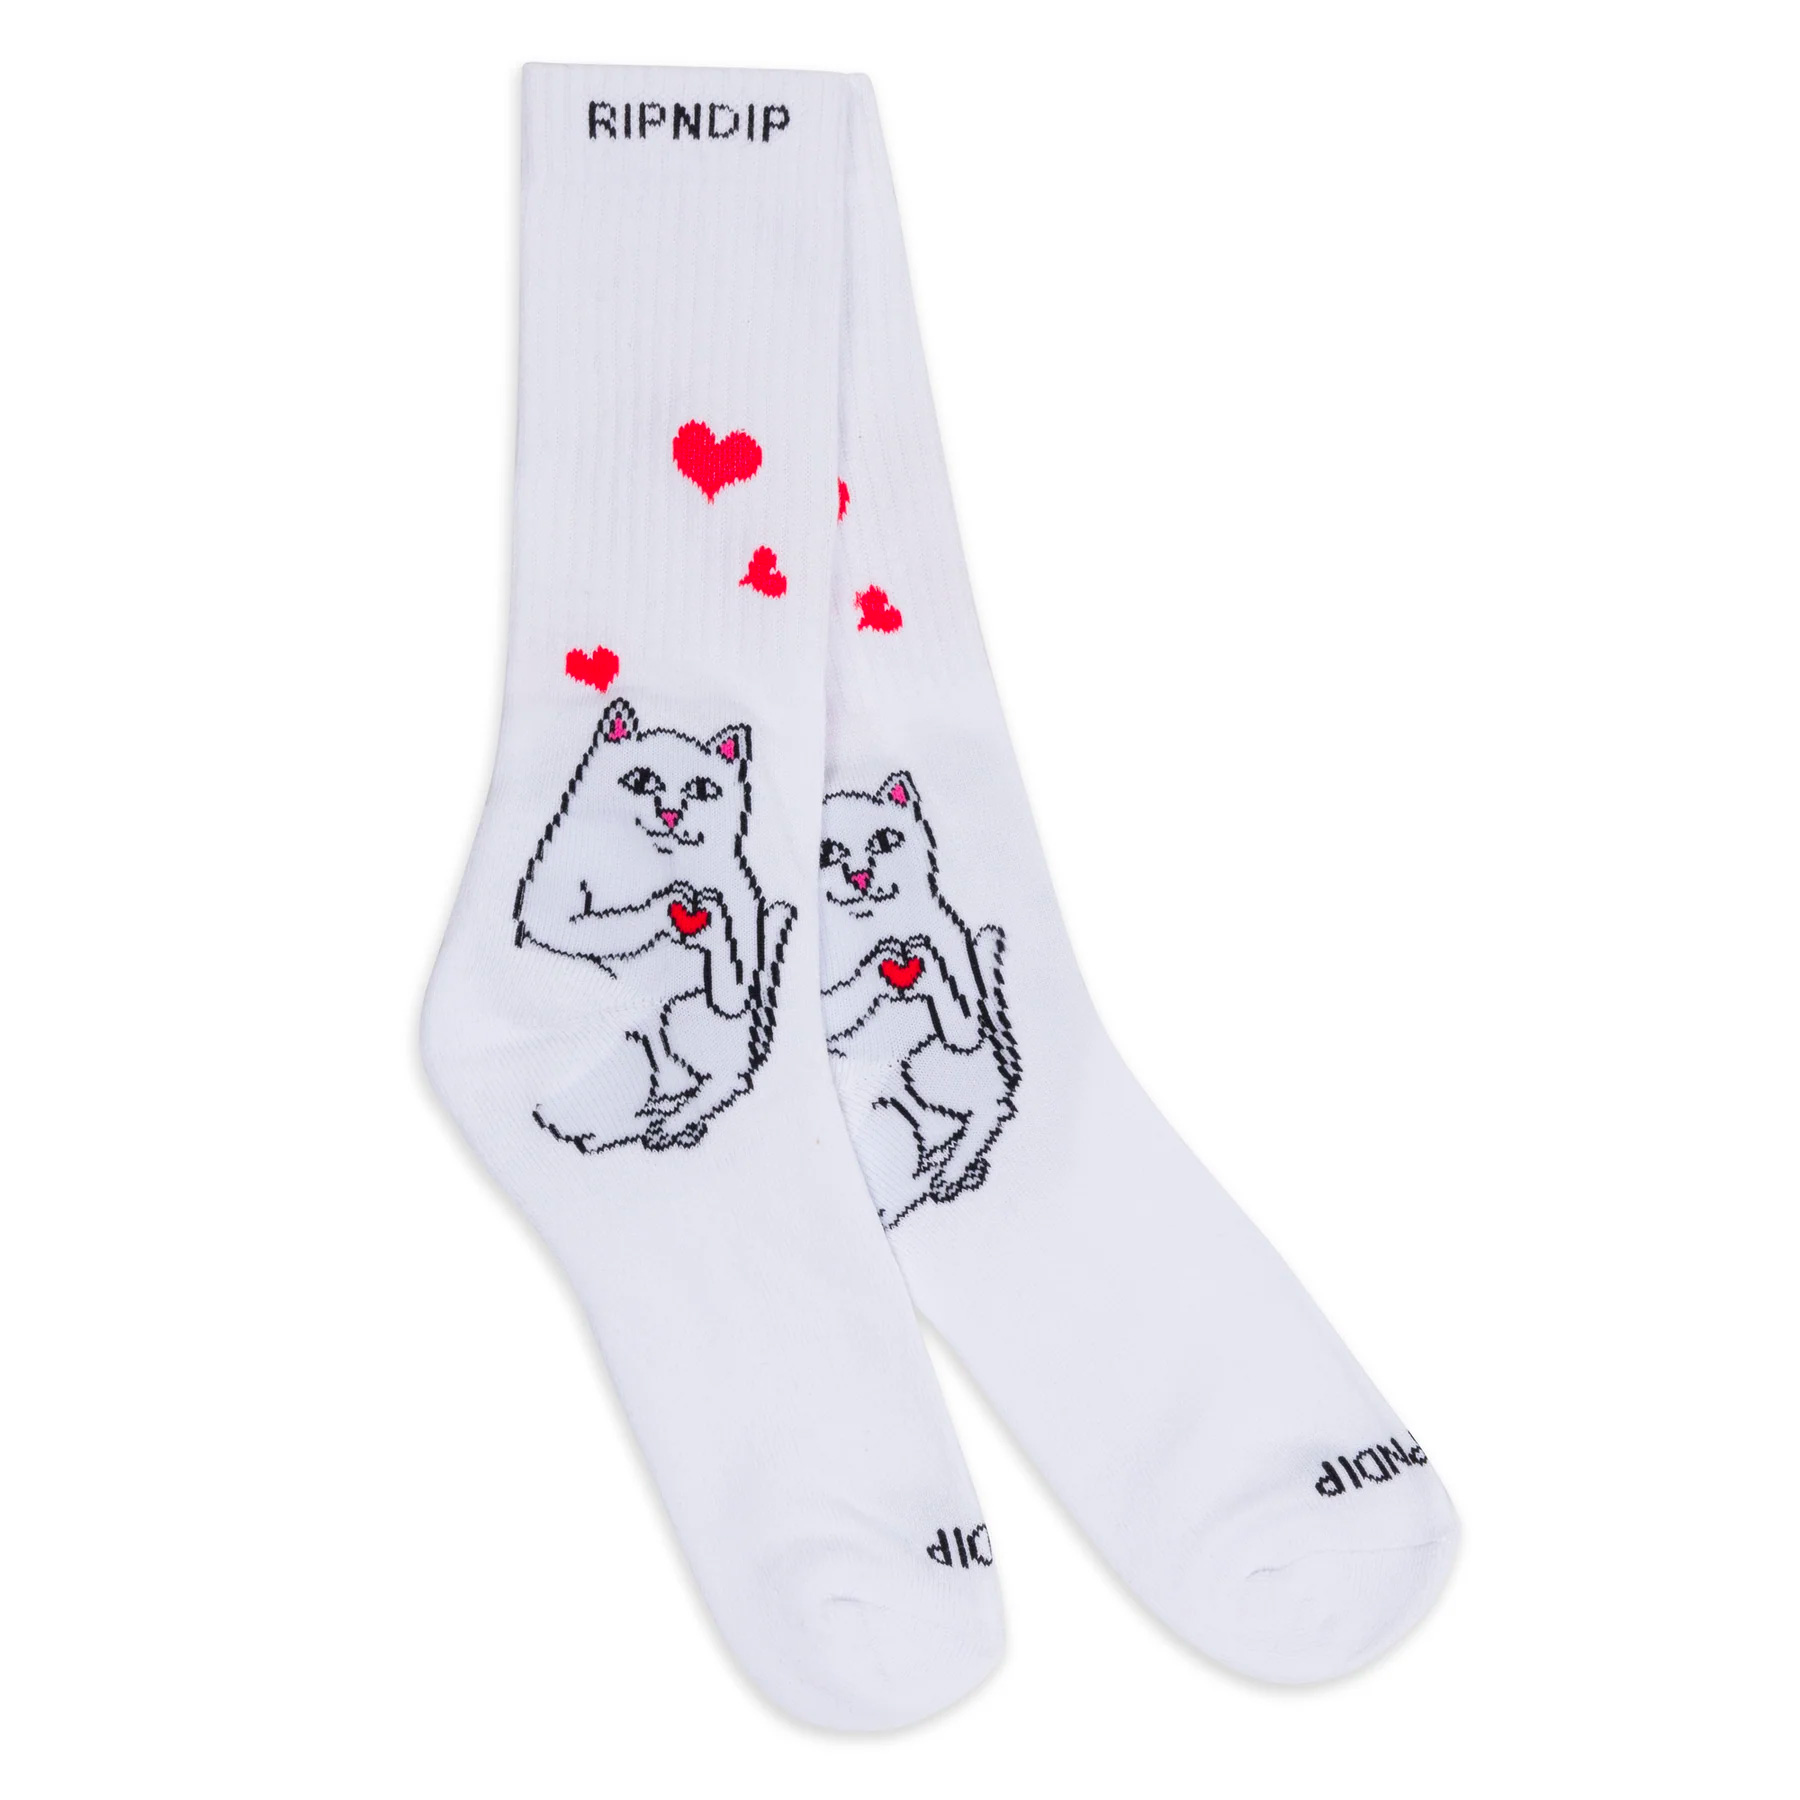 RIPNDIP Socken Nermal Loves (white)